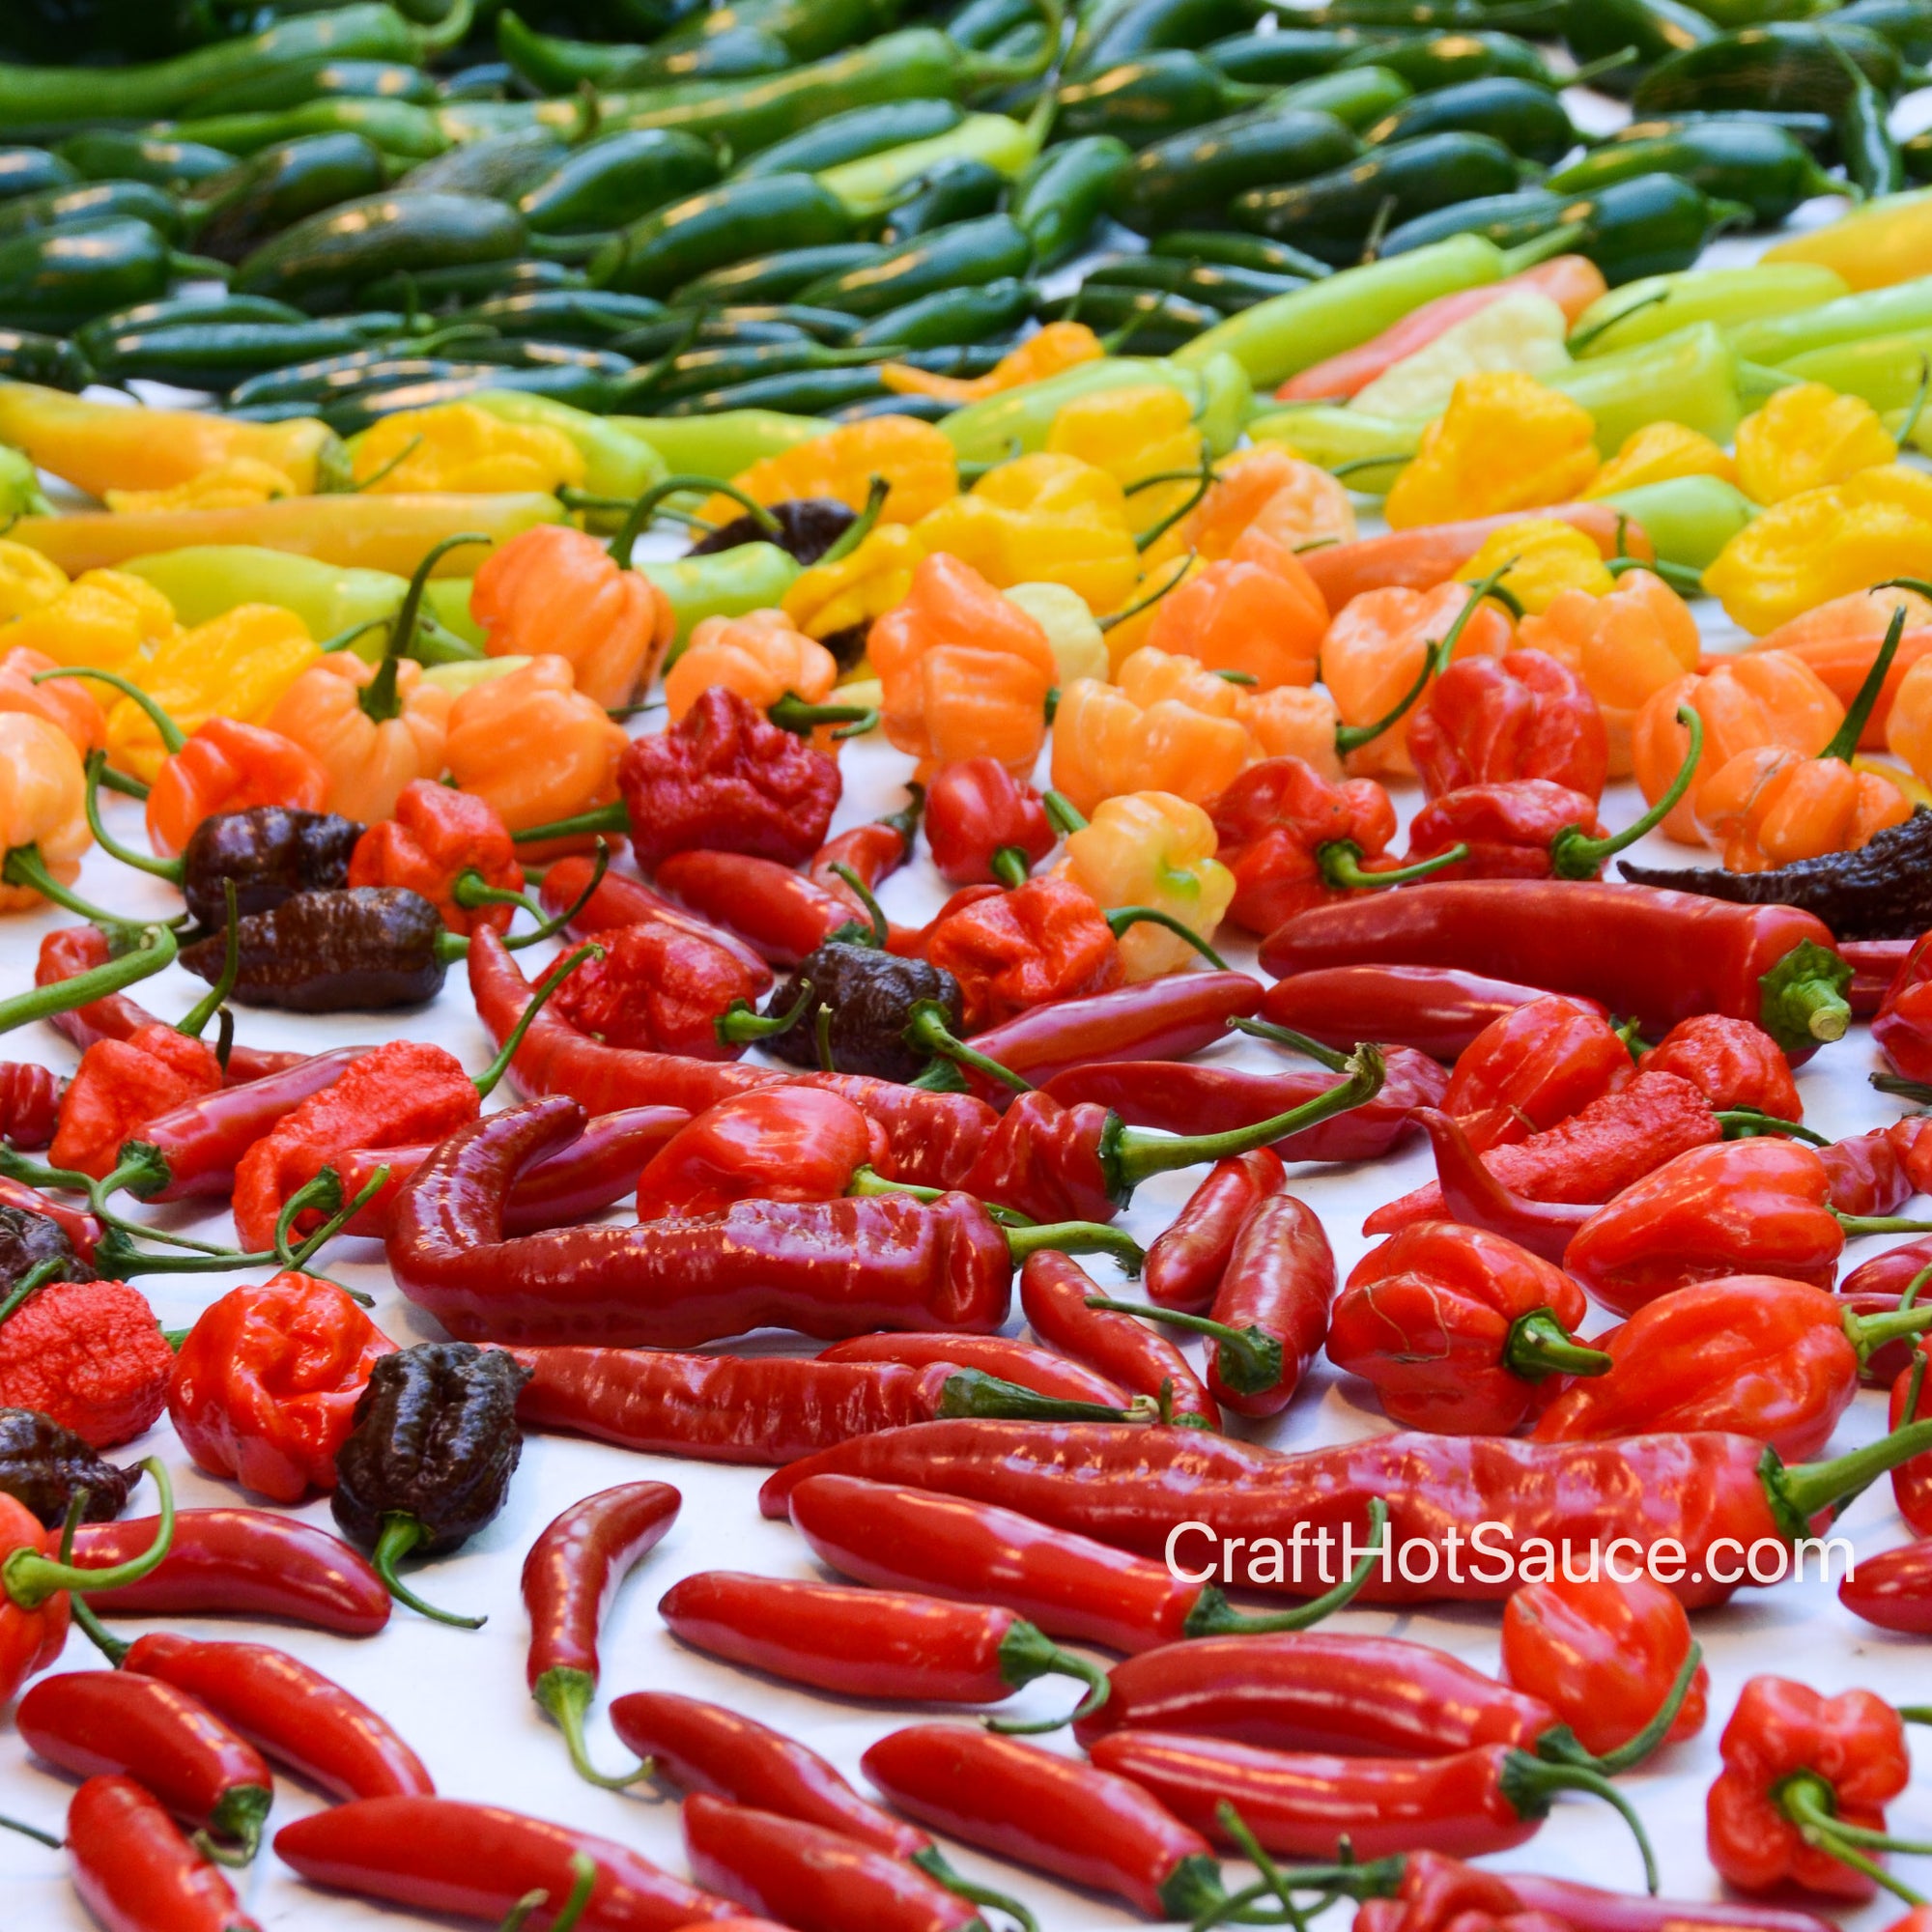 Chili pepper, Spicy Heat, Capsaicin, Cultivation